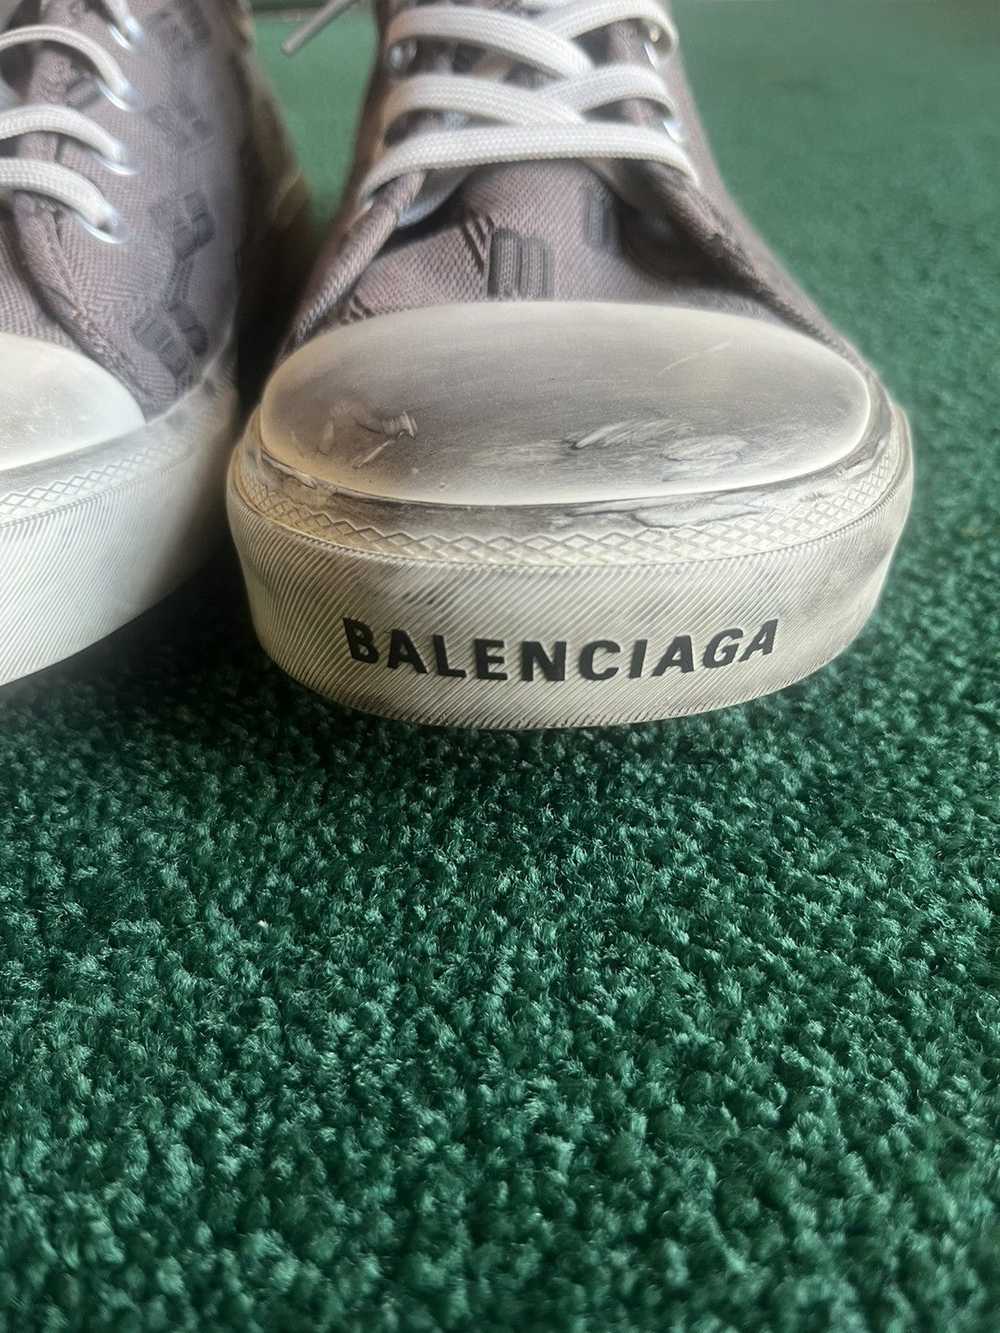 Balenciaga Balenciaga low top Paris sneakers - image 8